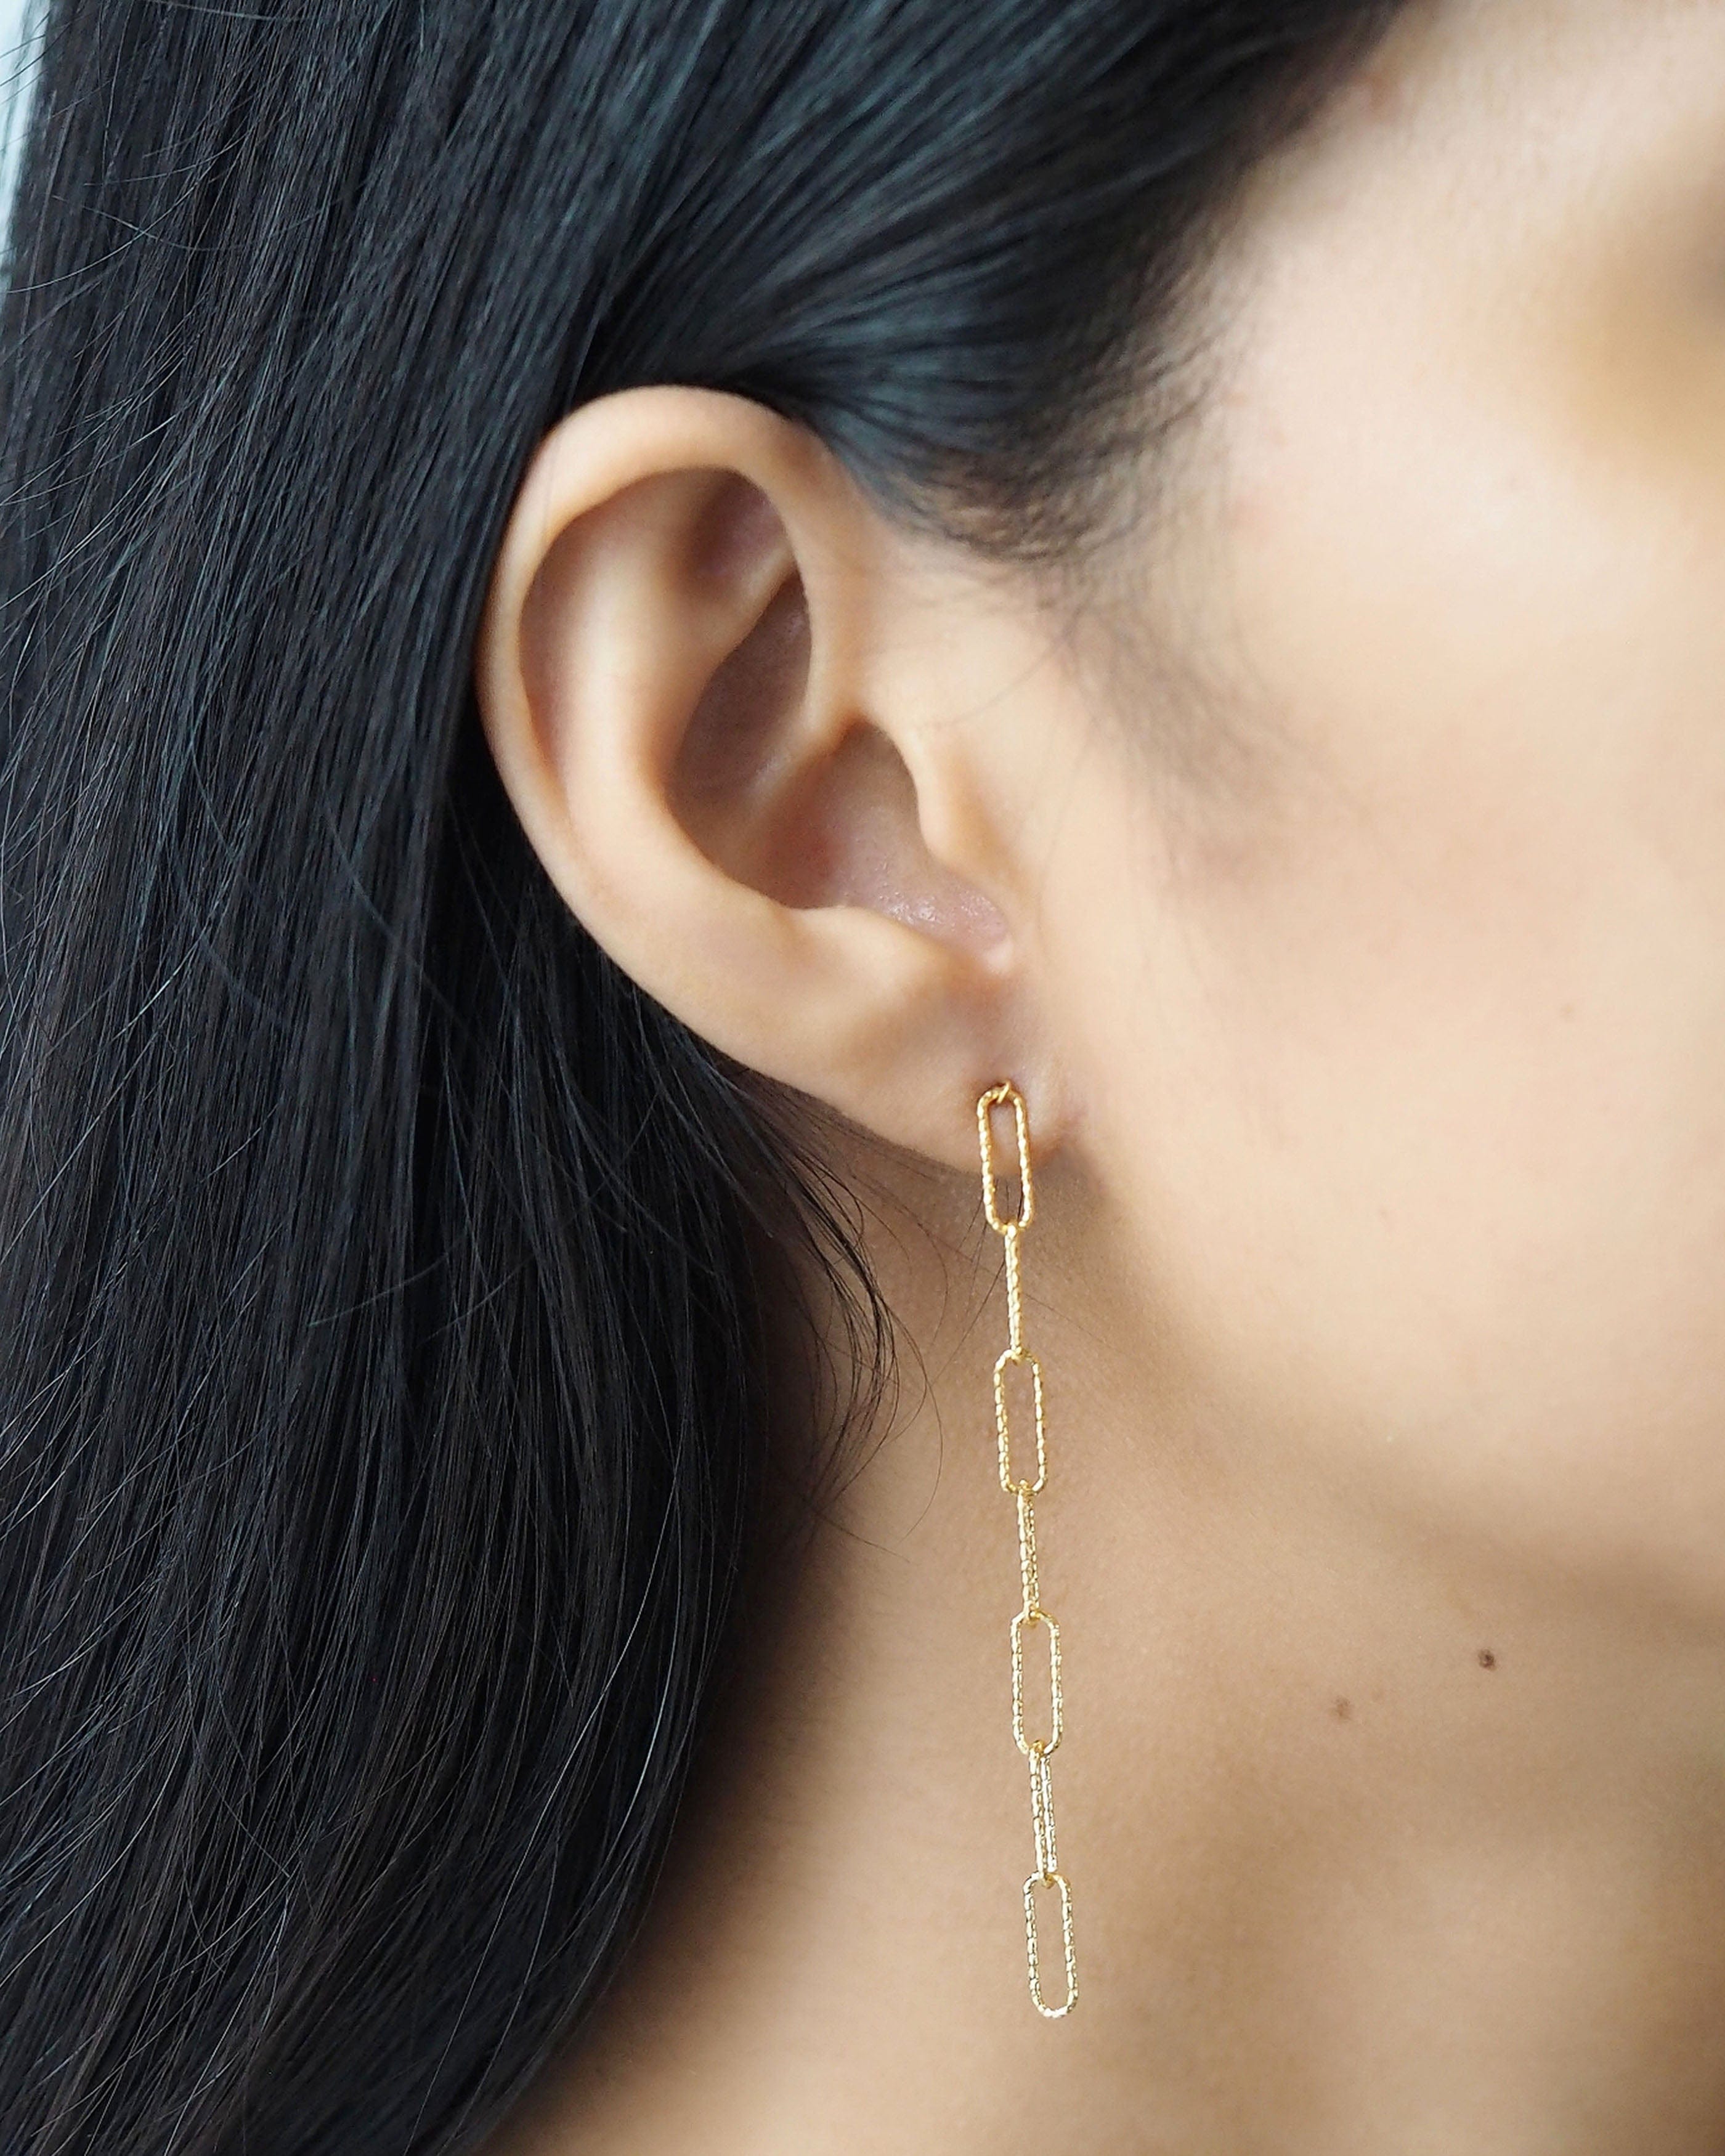 TAI JEWELRY Earrings Drop Link Chain Earrings